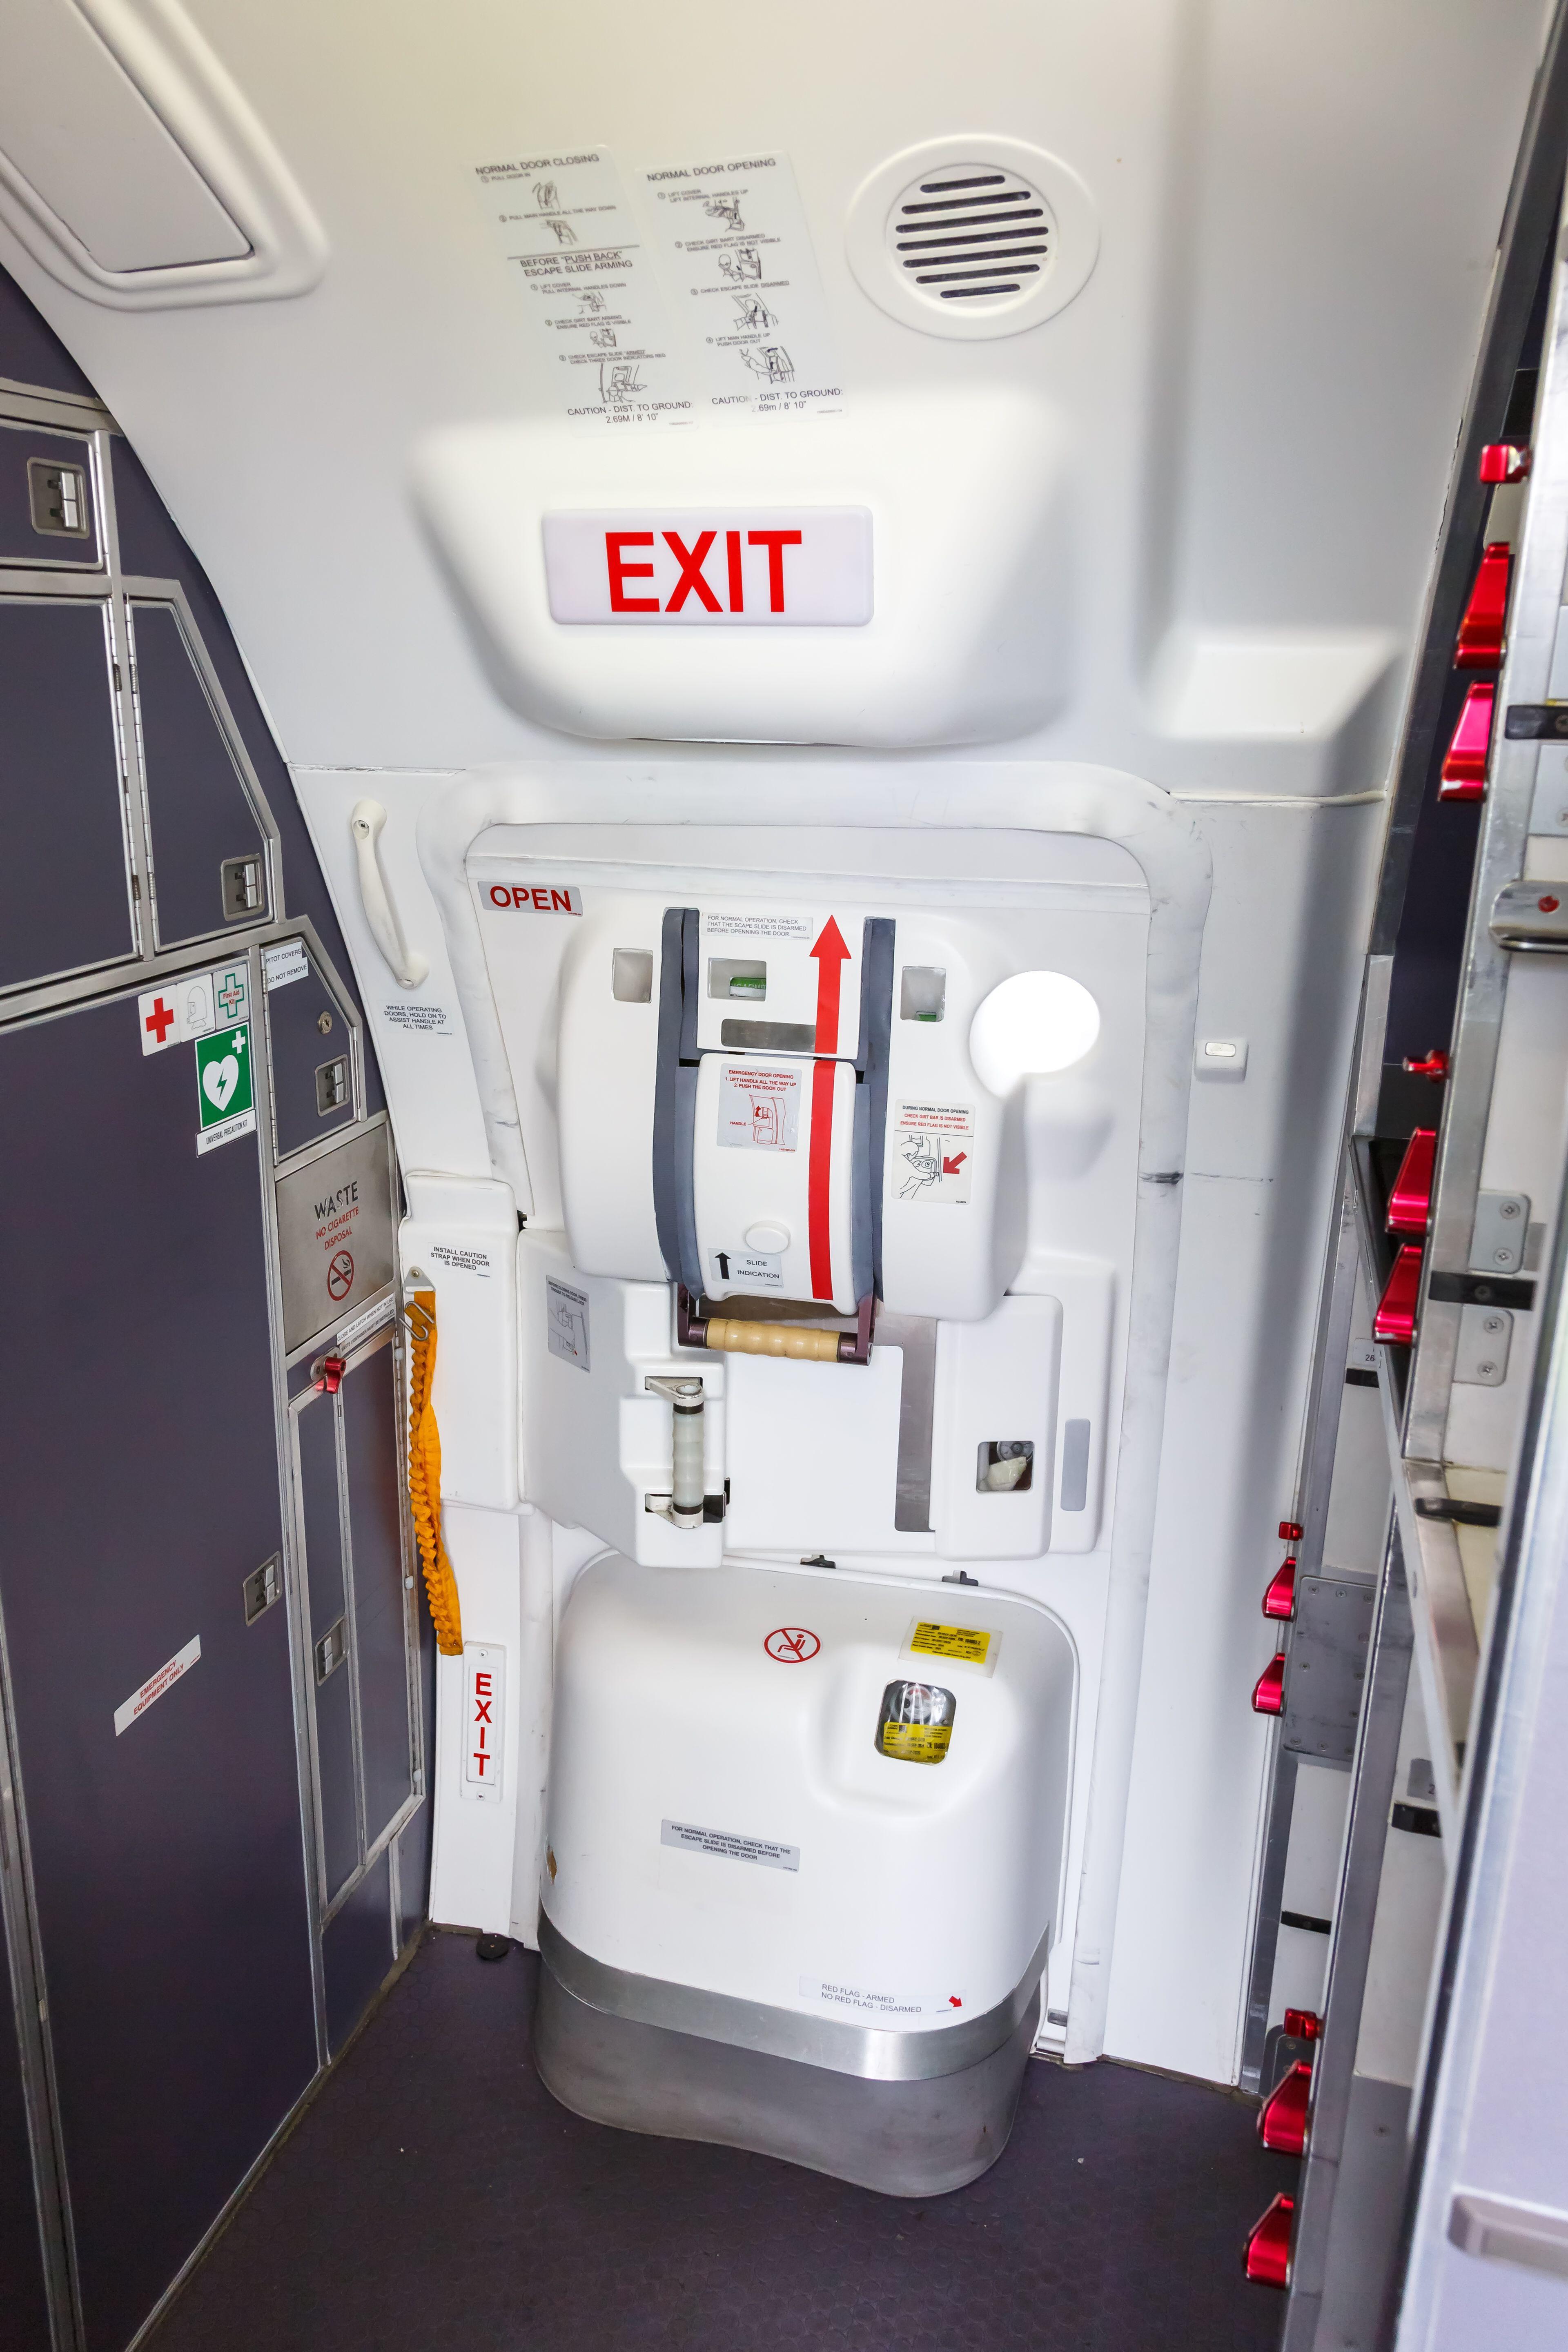 飞机紧急出口位置座椅图片